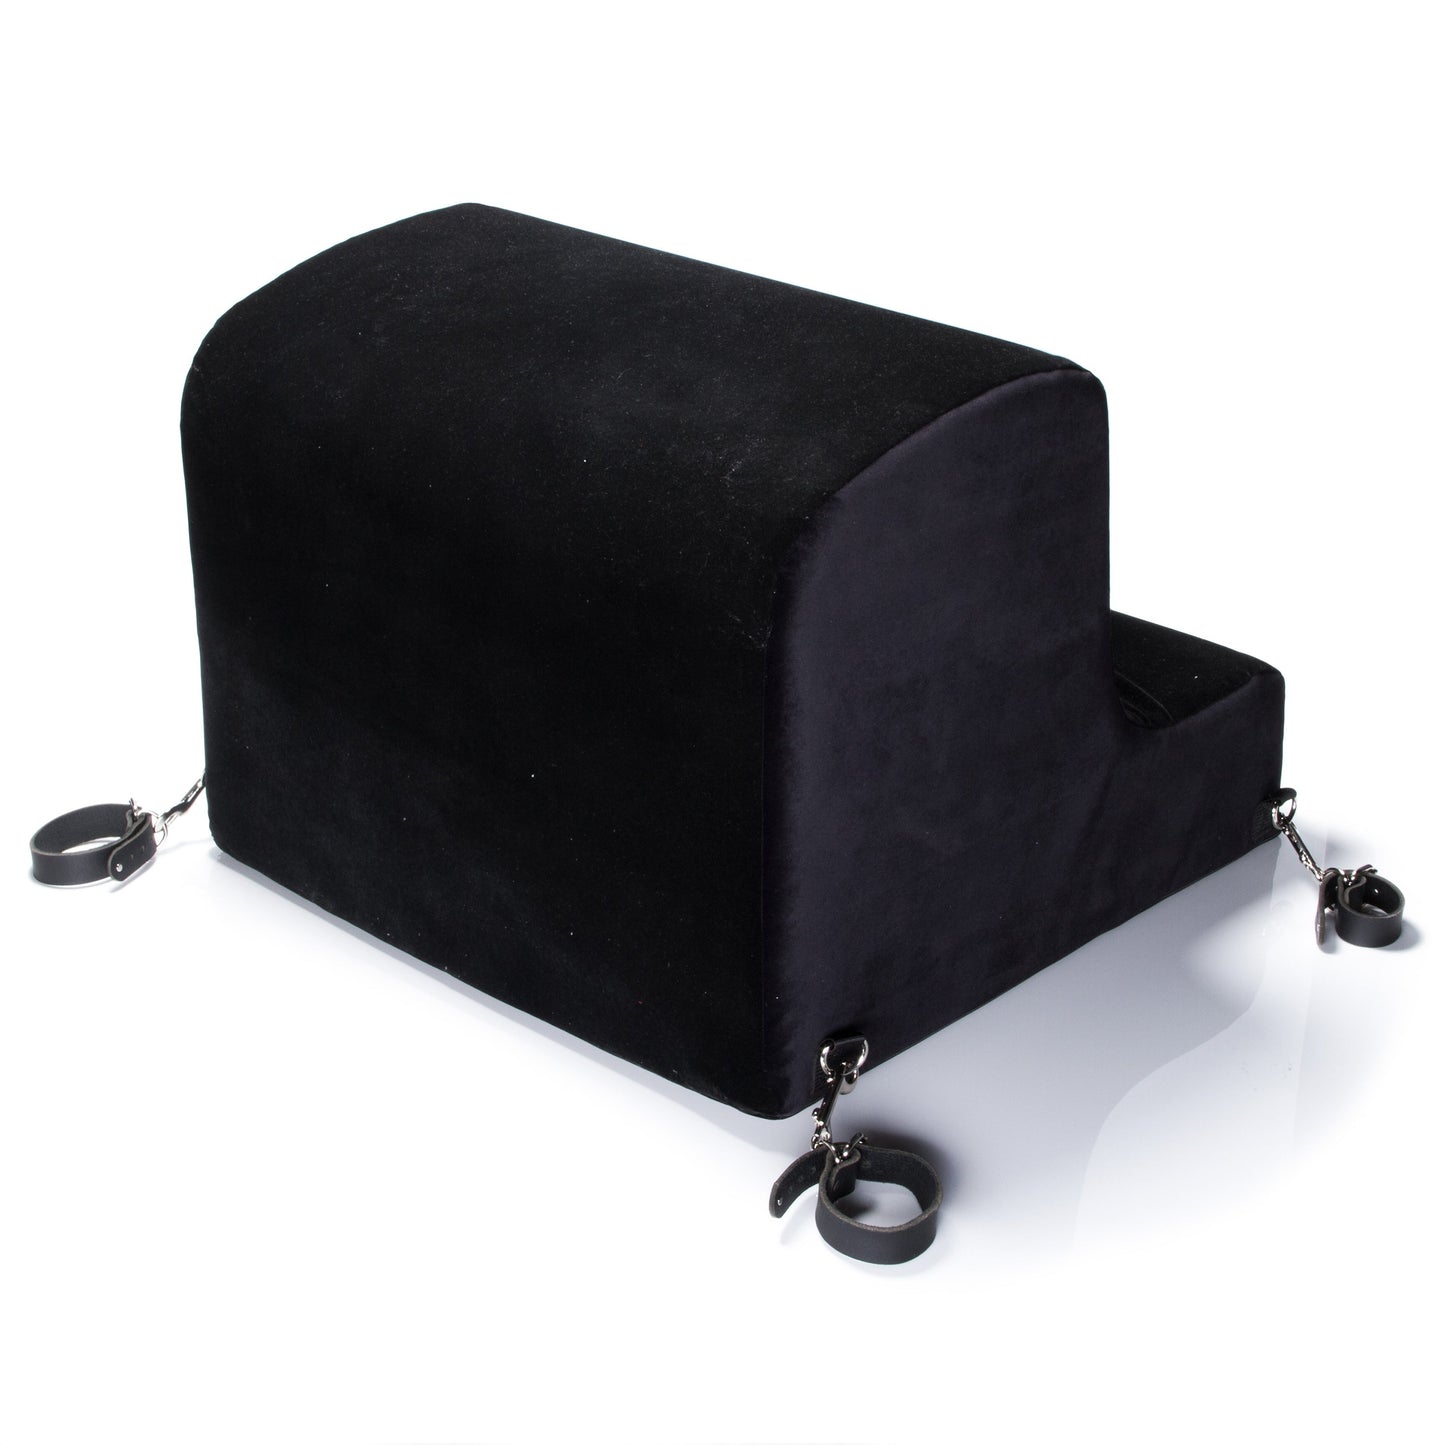 Obéir Spanking Bench W/Cuffs Microfiber - non retail box